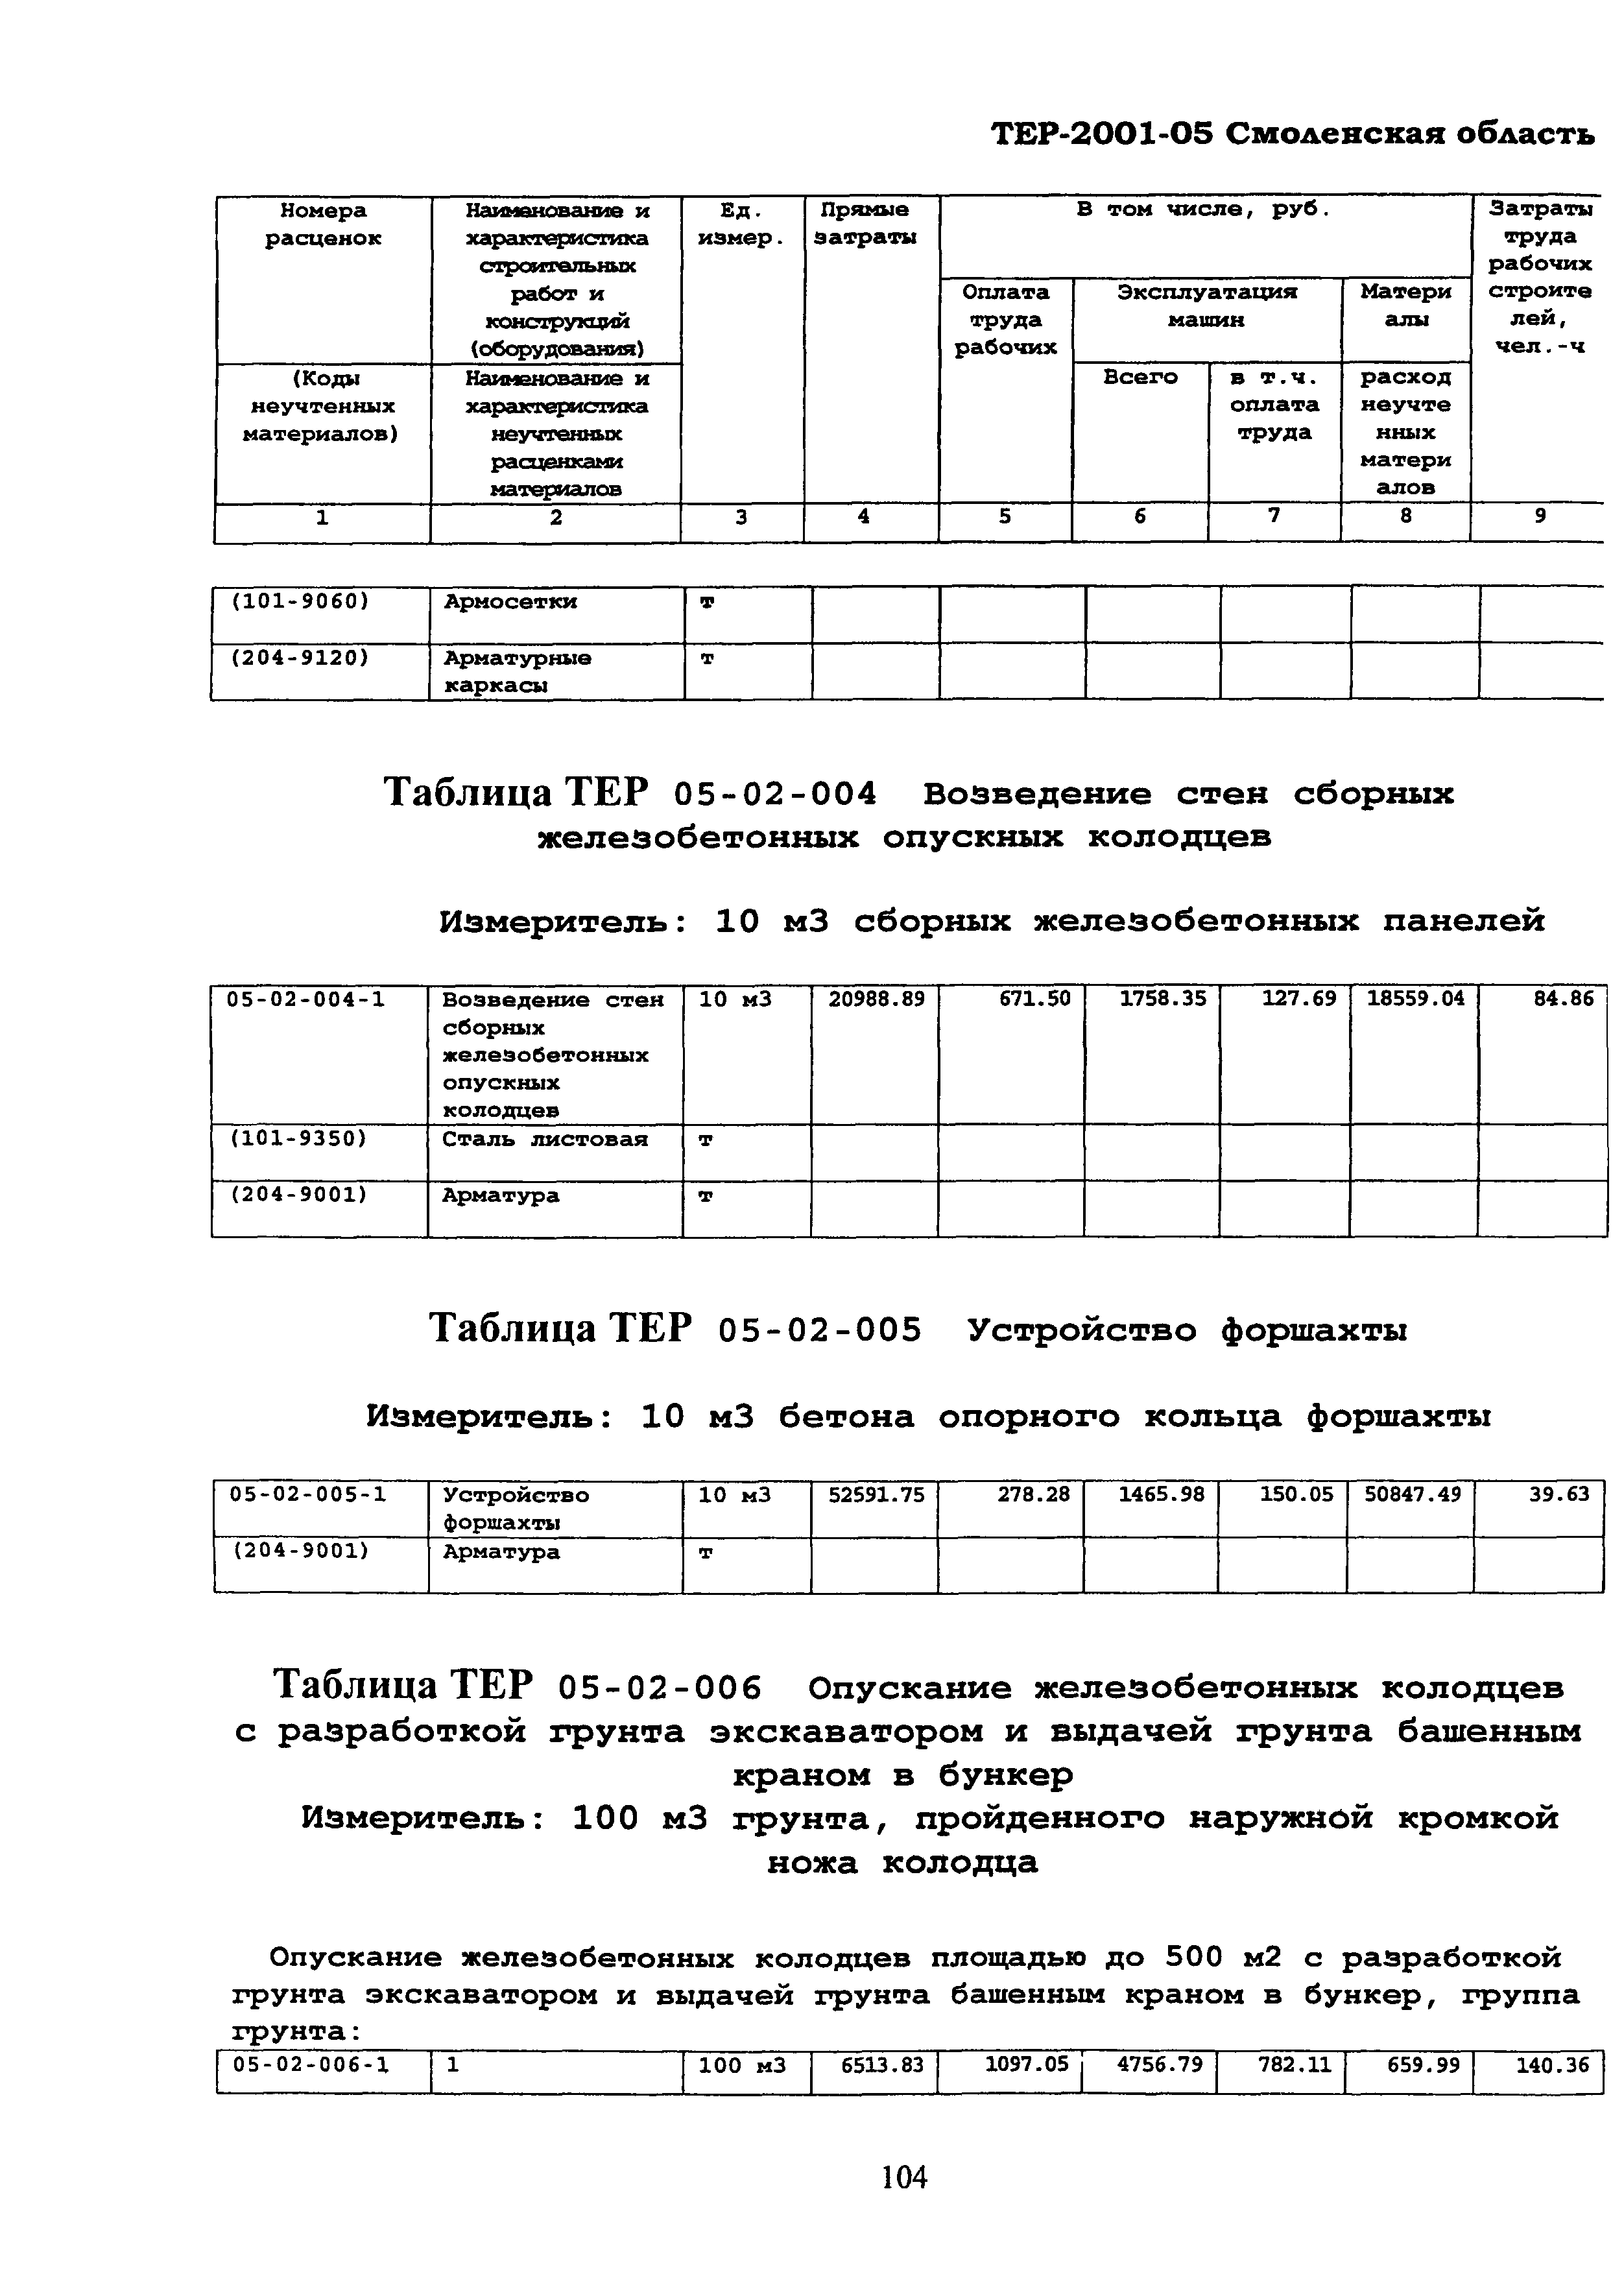 ТЕР Смоленской обл. 2001-05